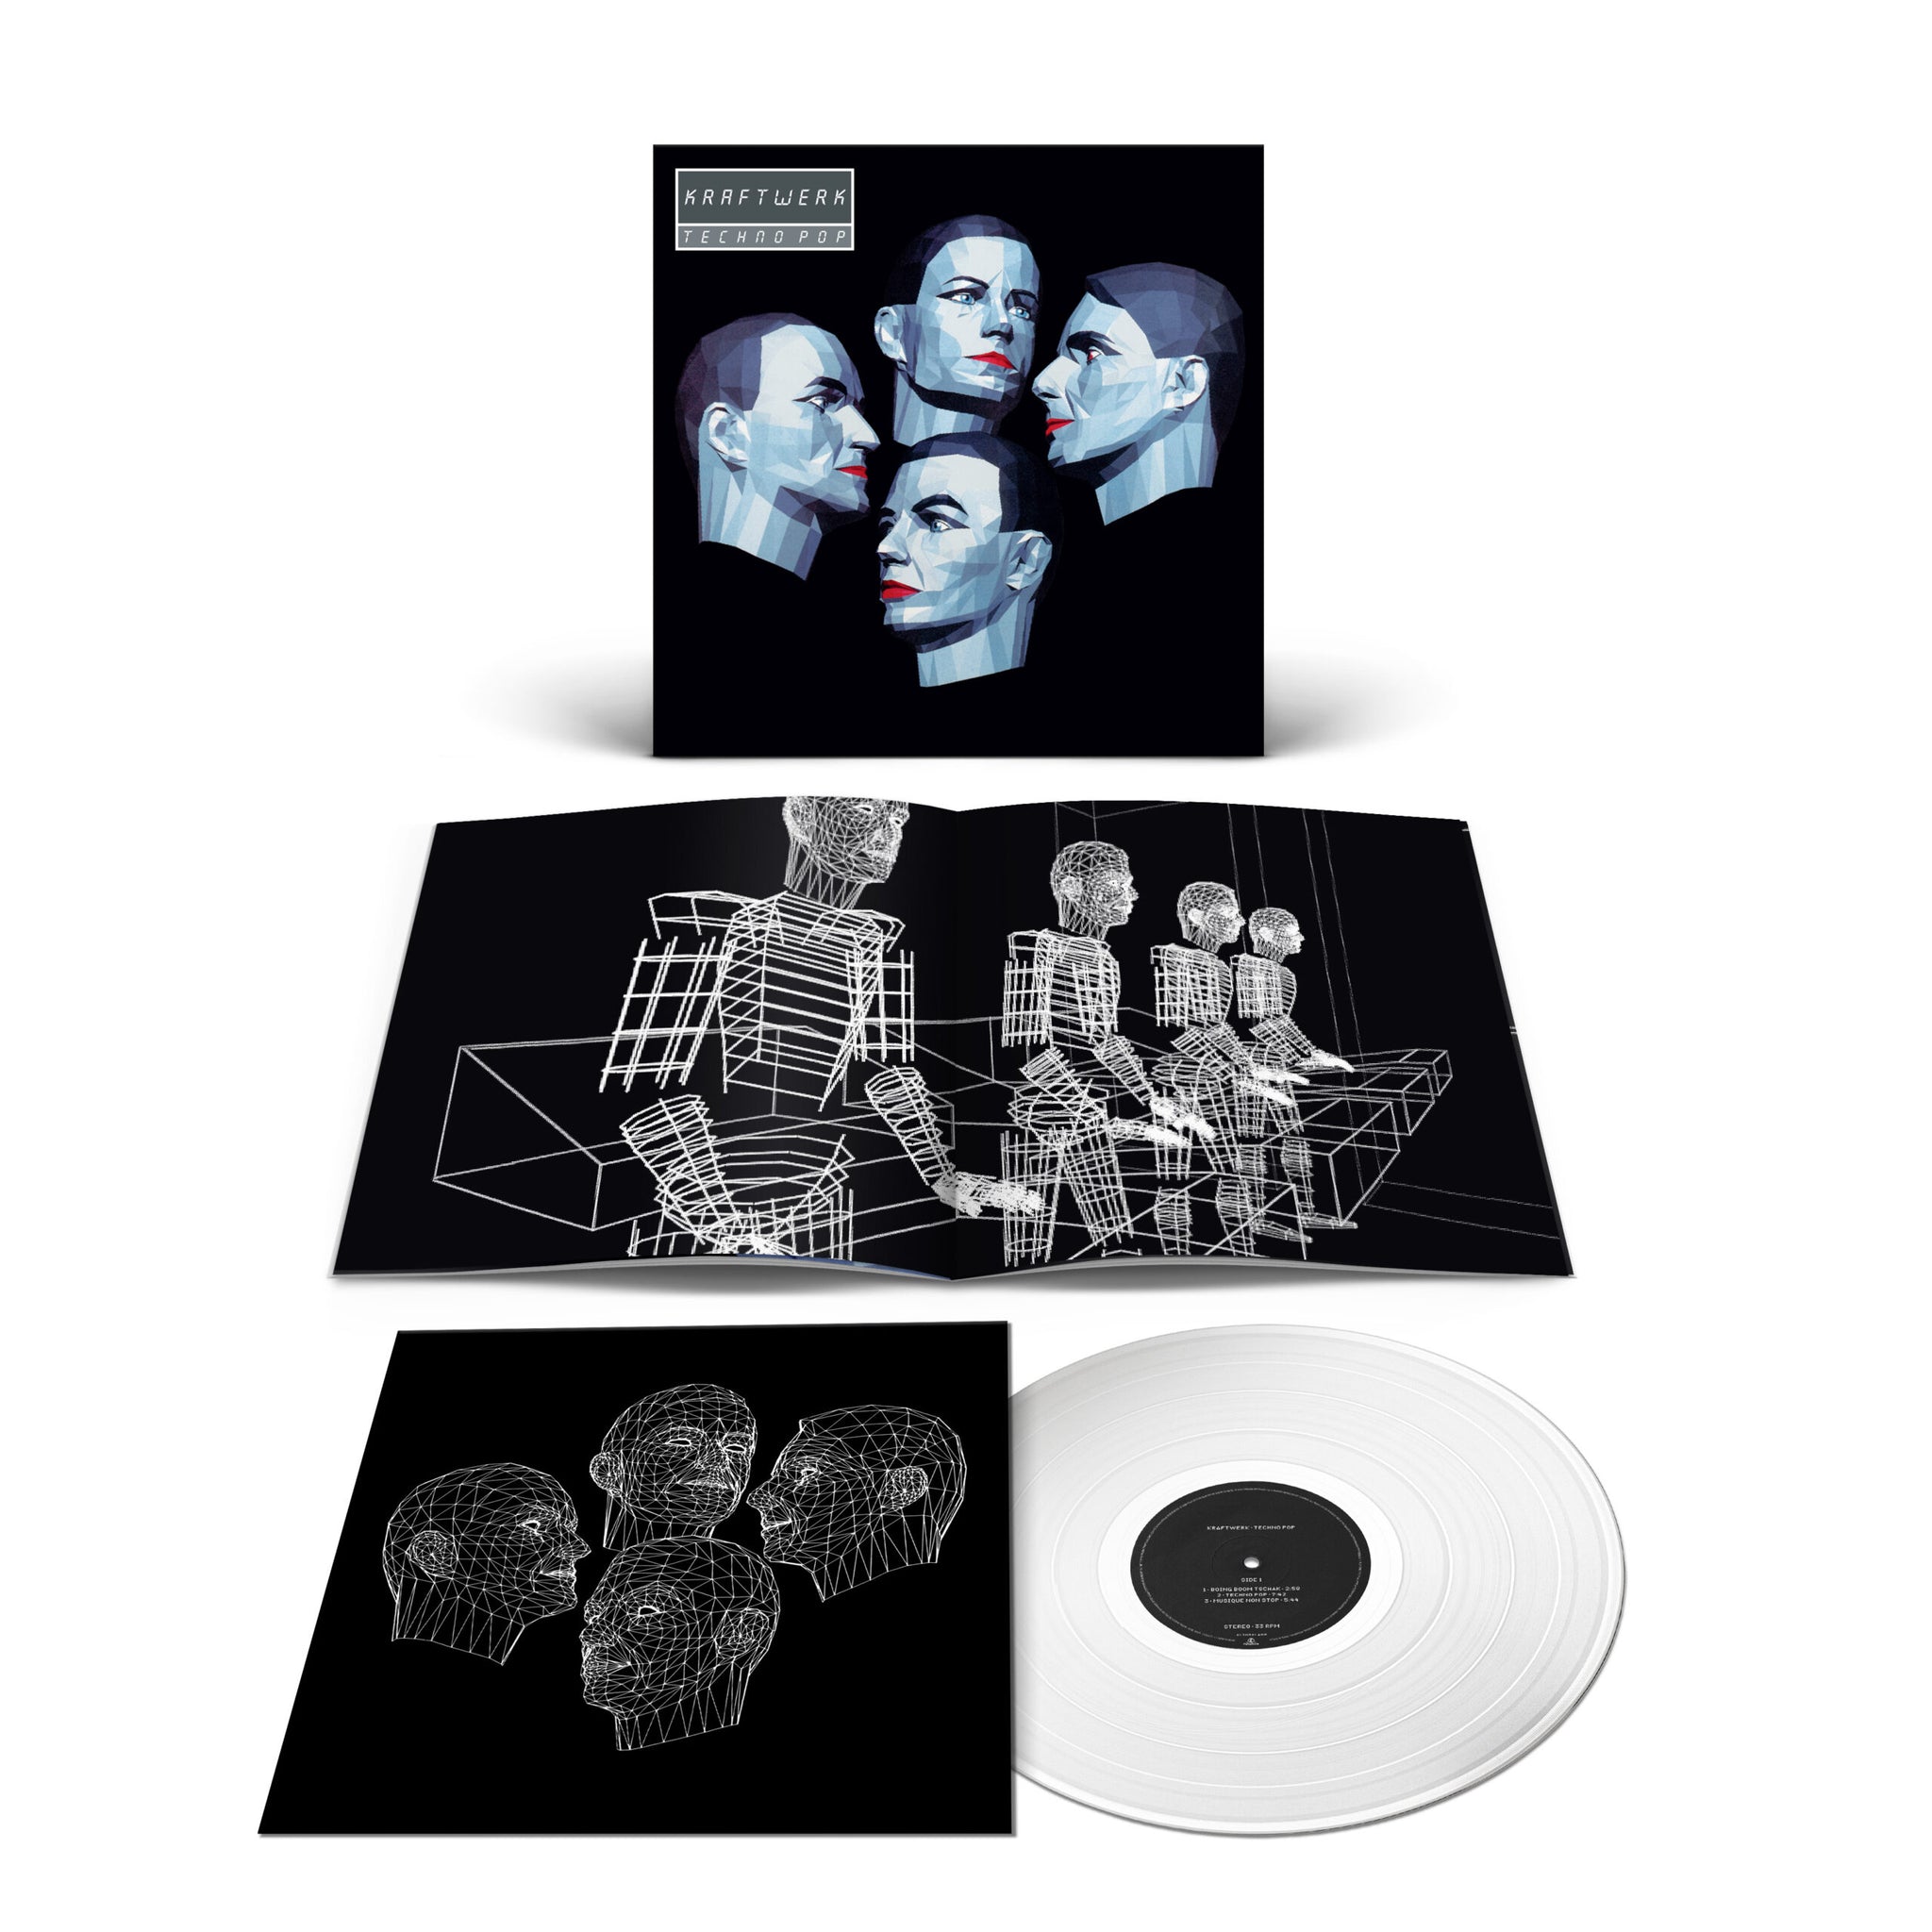 KRAFTWERK – Techno Pop (Remastered) – LP – 180g Clear Vinyl